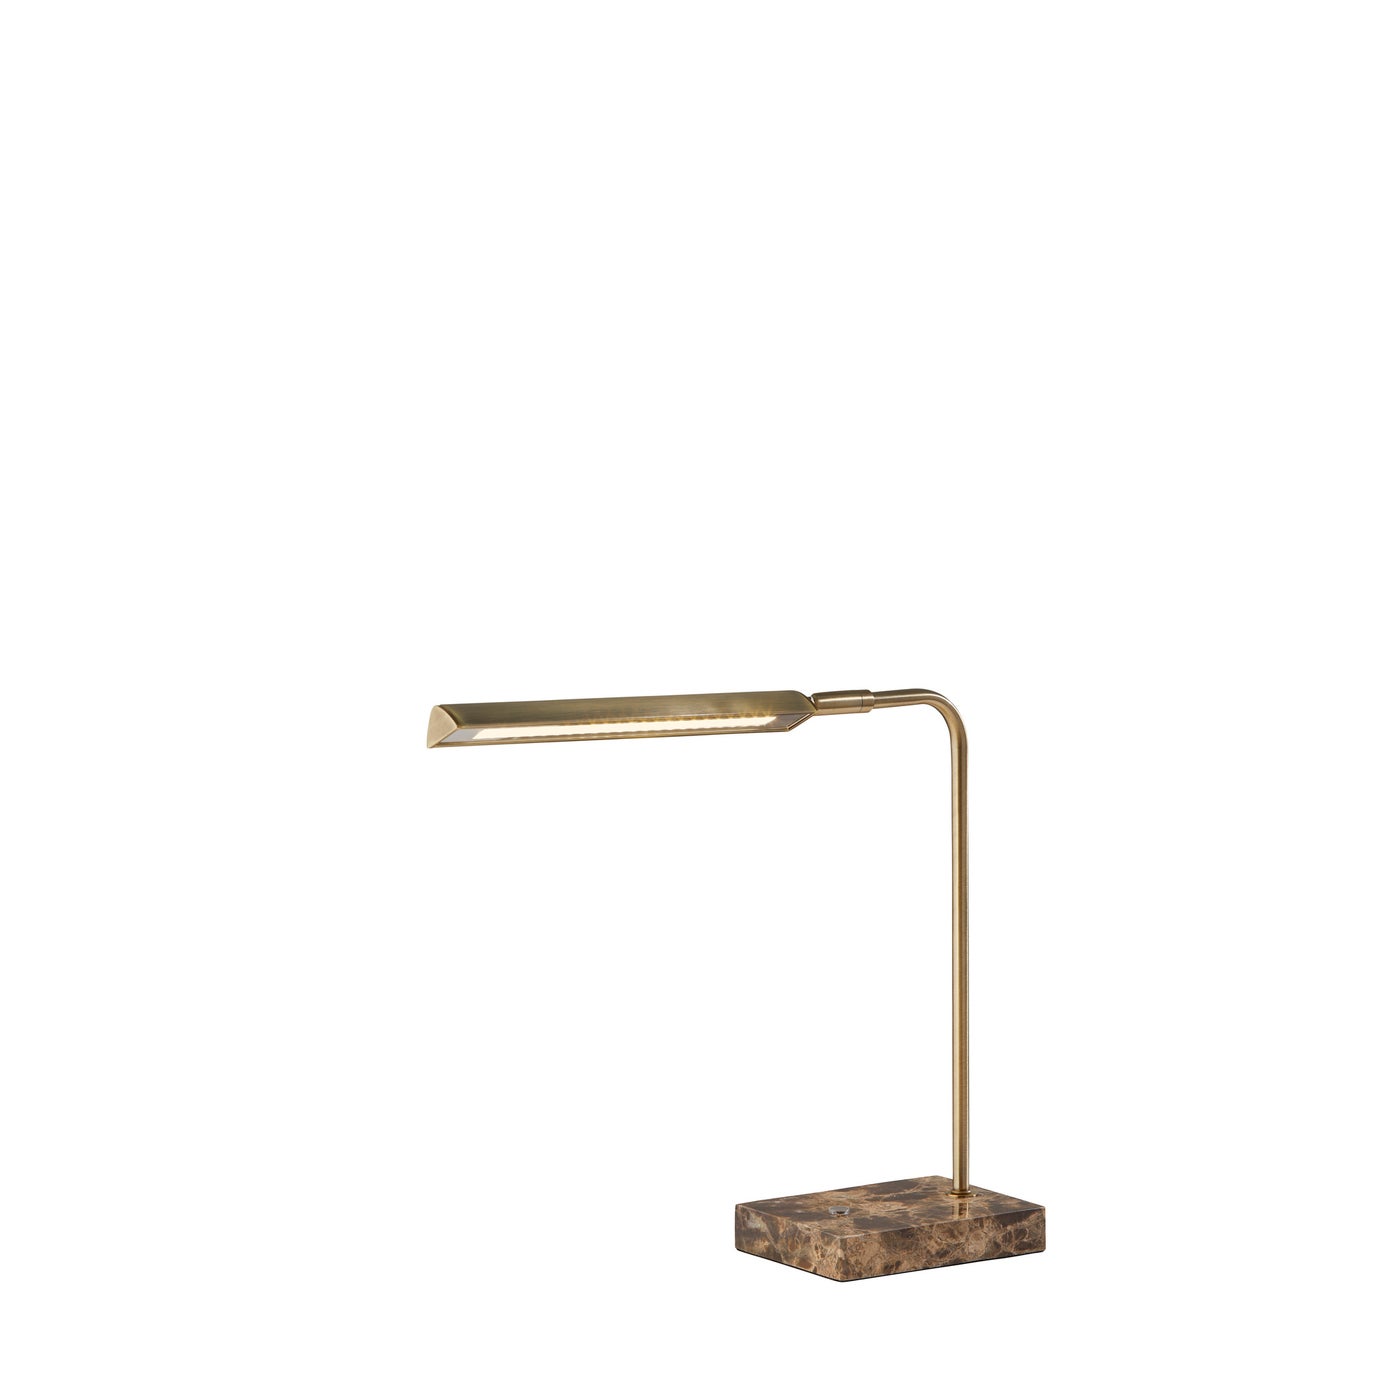 Adesso Home - 3557-21 - LED Desk Lamp - Reader - Antique Brass